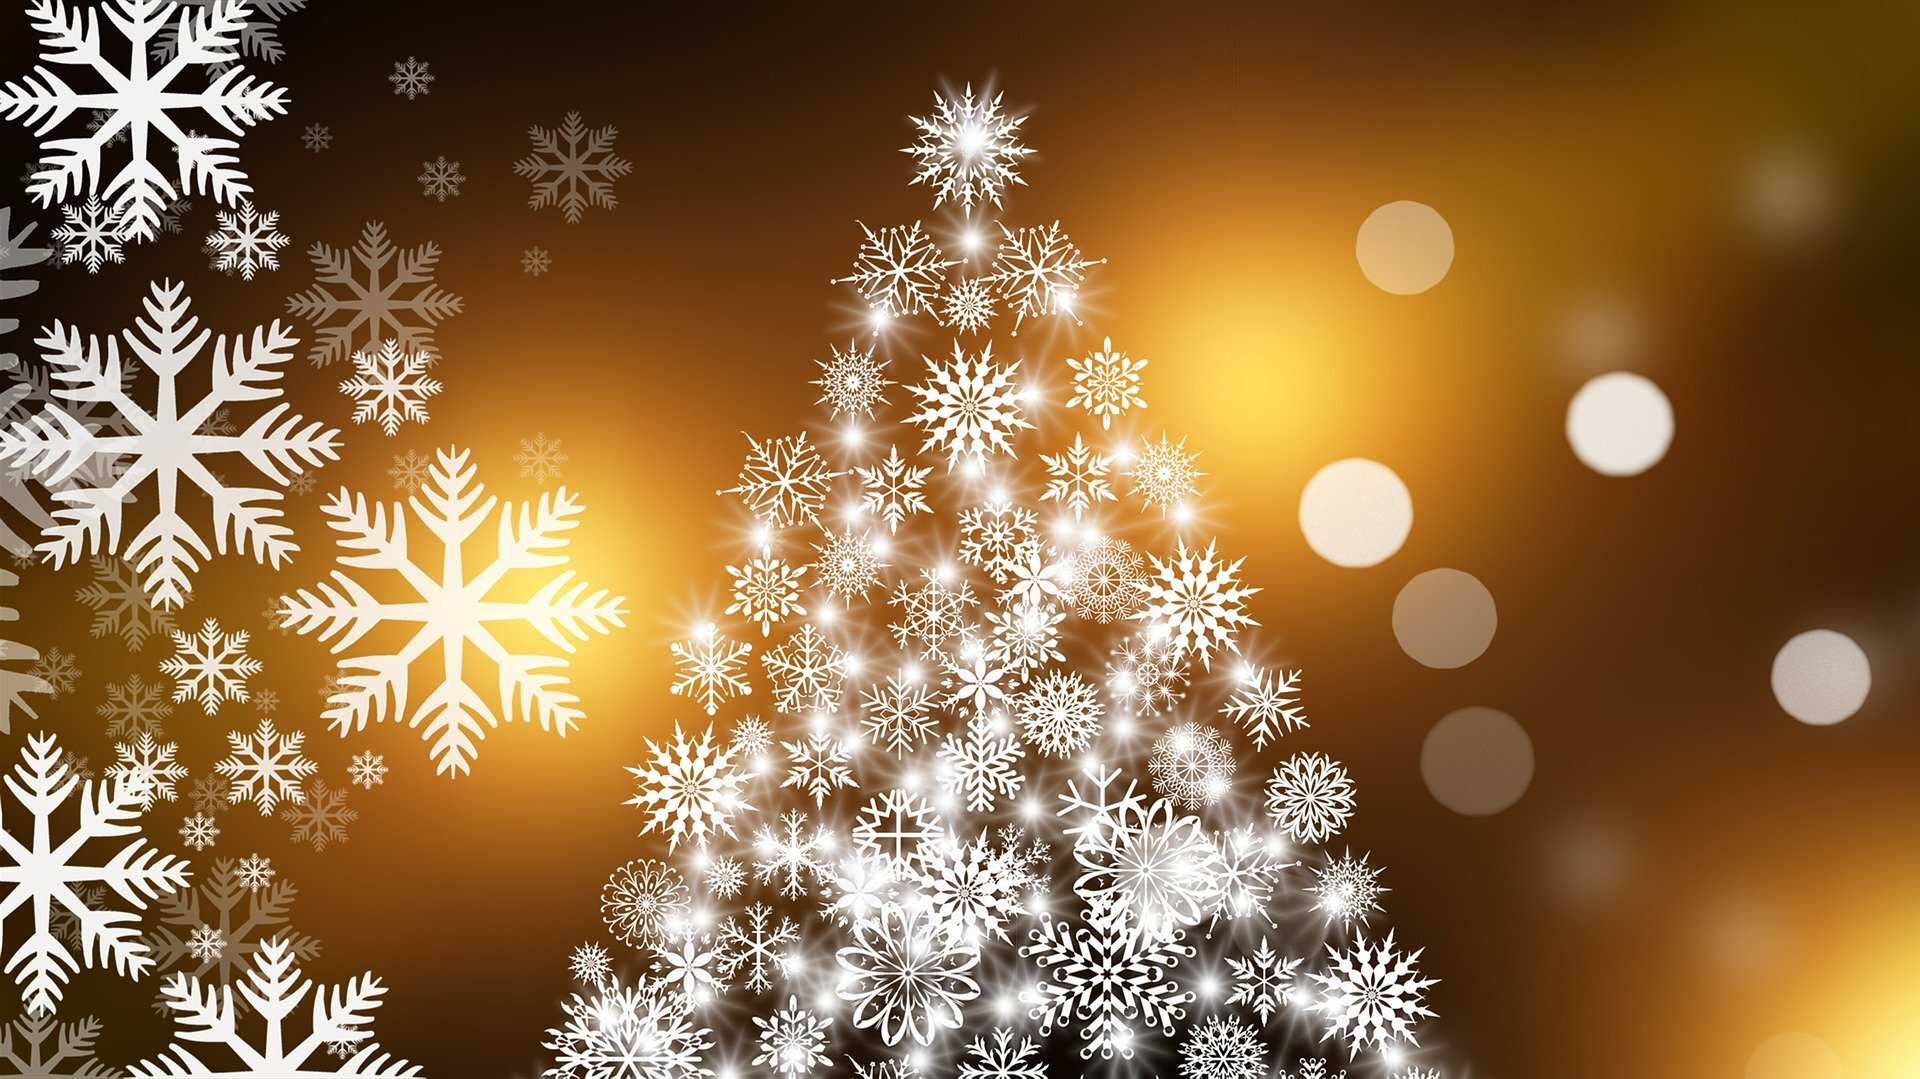 christmas-tree-574742_1920.jpg